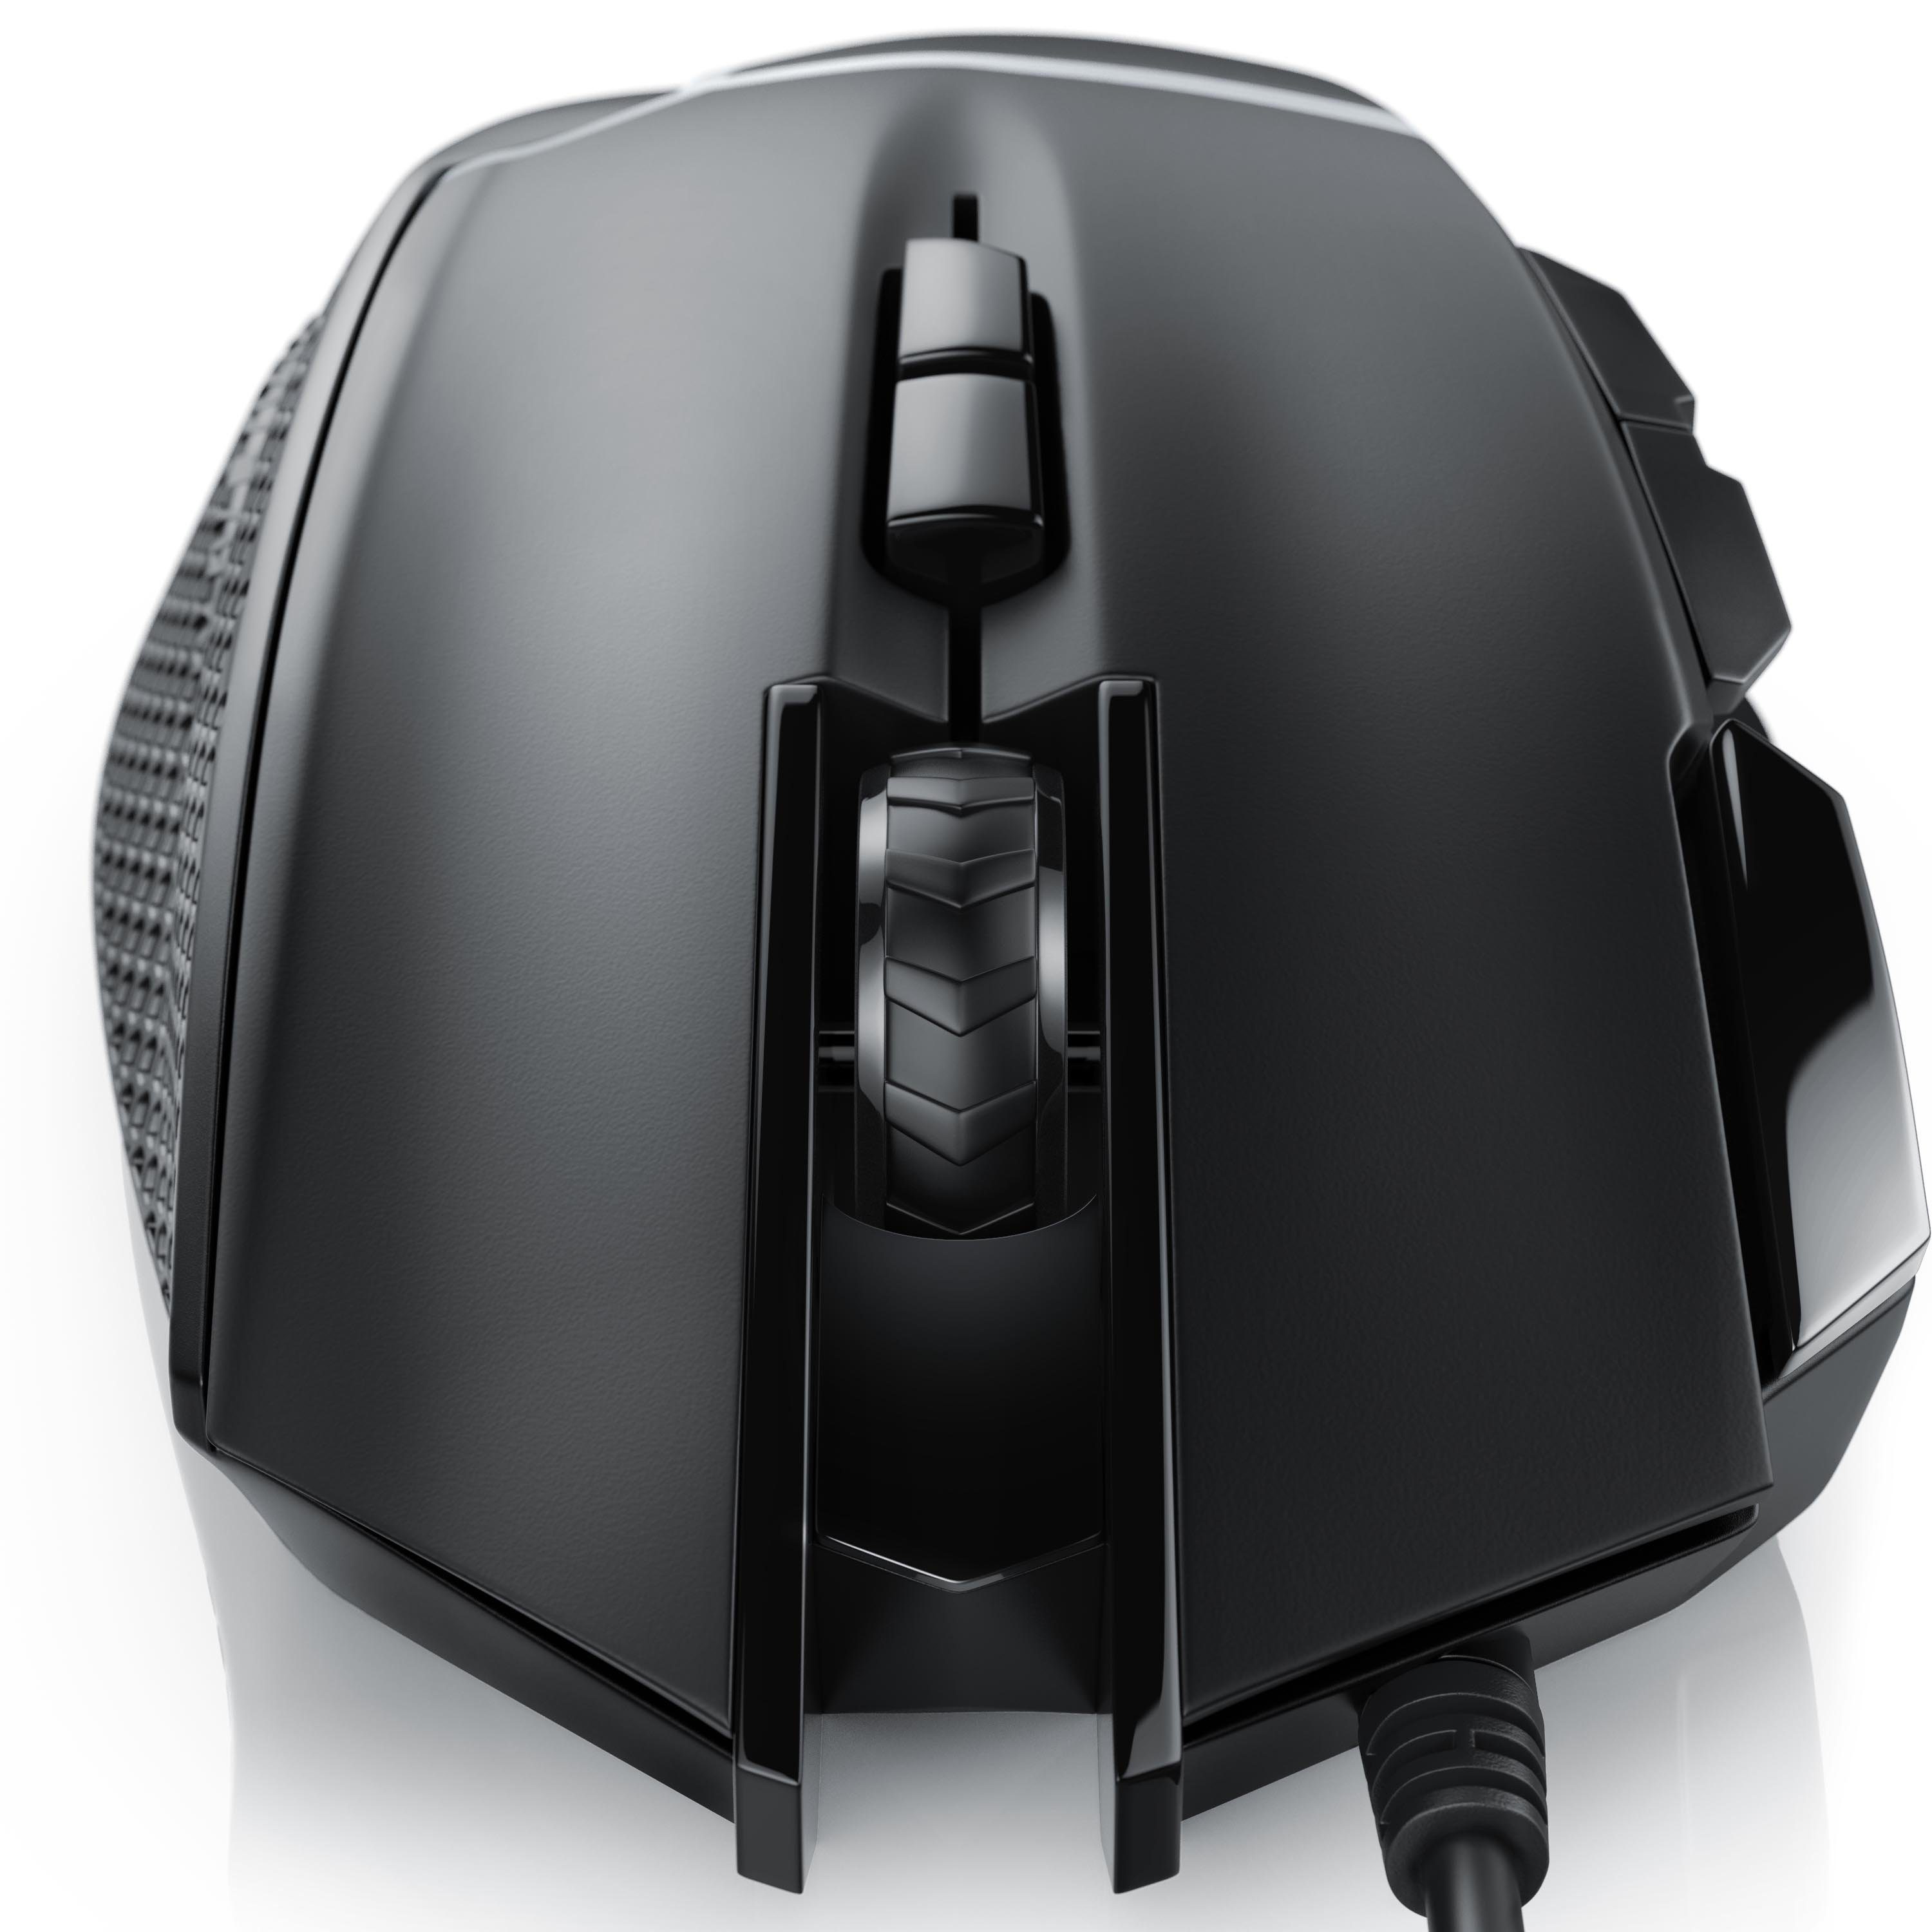 CSL Gaming-Maus (kabelgebunden, 500 dpi, ergonomisch, Abtastrate dpi, Mouse 3200 Gewichten) wählbar, inkl